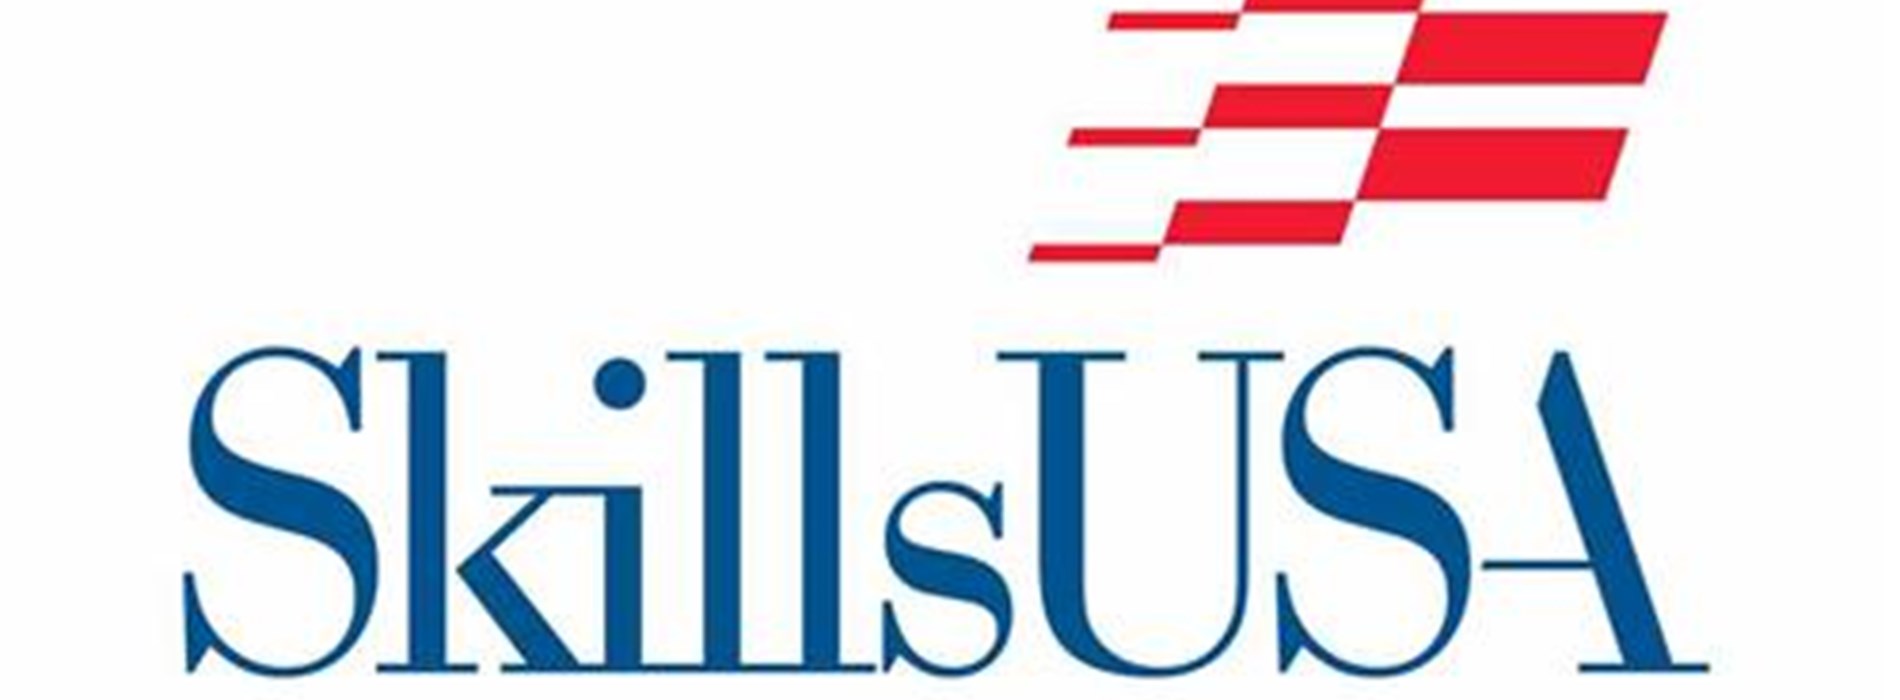 skillsusa-logo-jpg.jpg